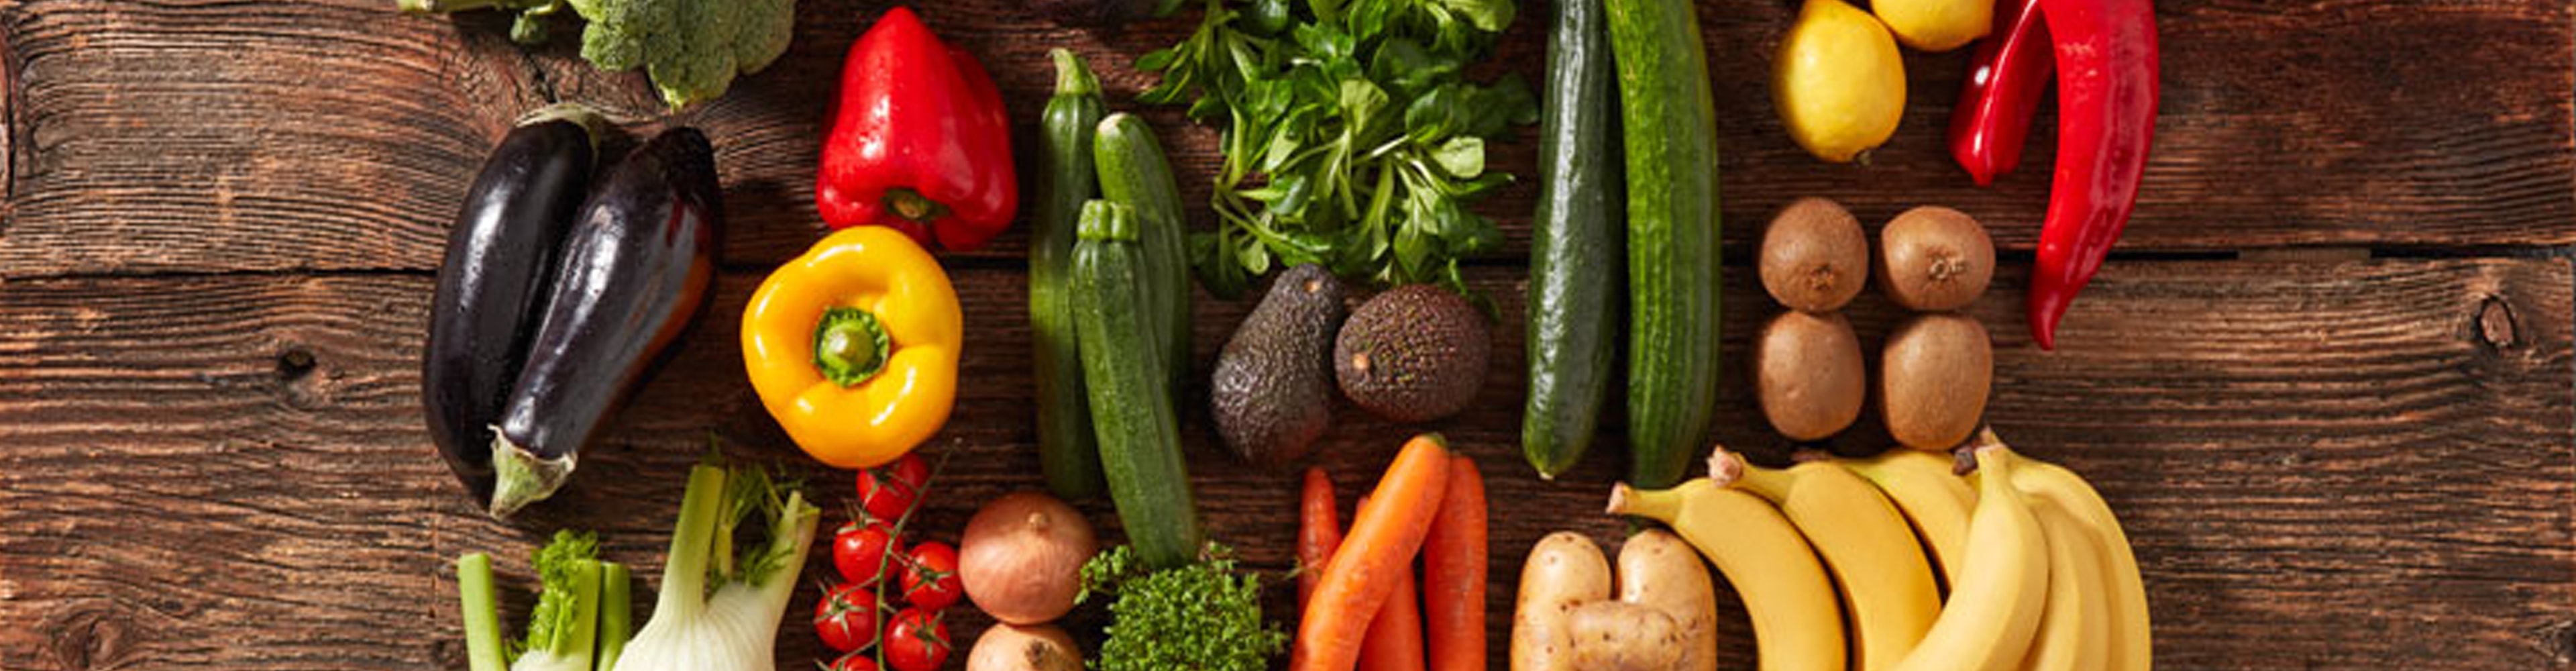 Gemüse & Früchte – mit ihnen wird jede Mahlzeit bunter!